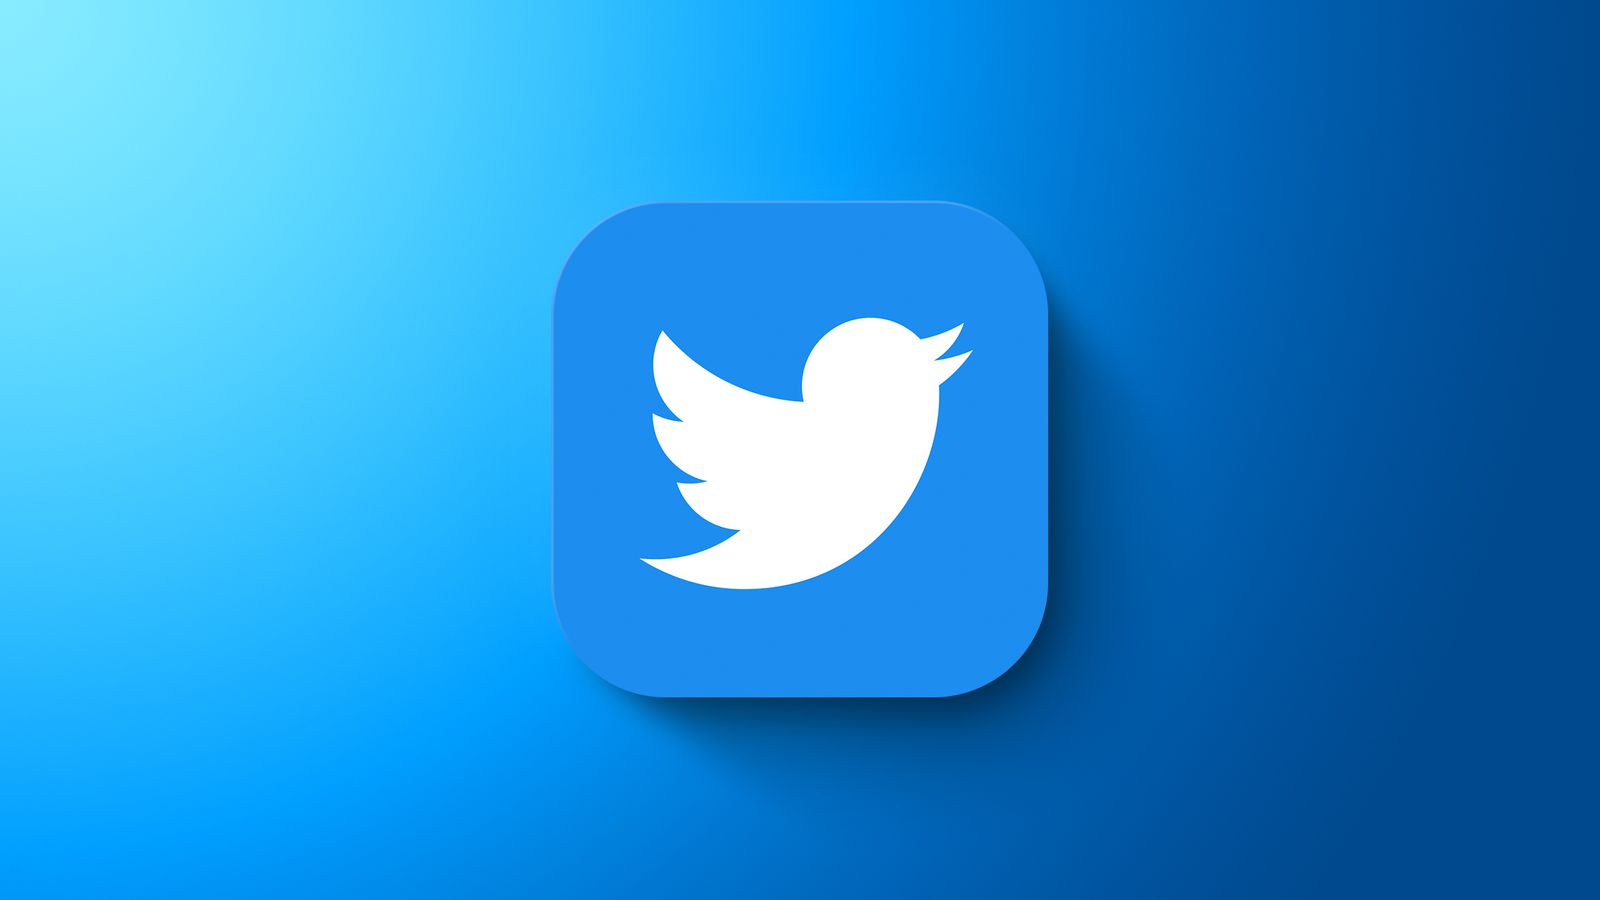 蘋果iOS用戶想獲得Twitter Blue藍勾：每月11美金 | App Store, Elon Musk, Twitter Blue, 伊隆·馬斯克, 推特, 推特藍勾 | iPhone News 愛瘋了